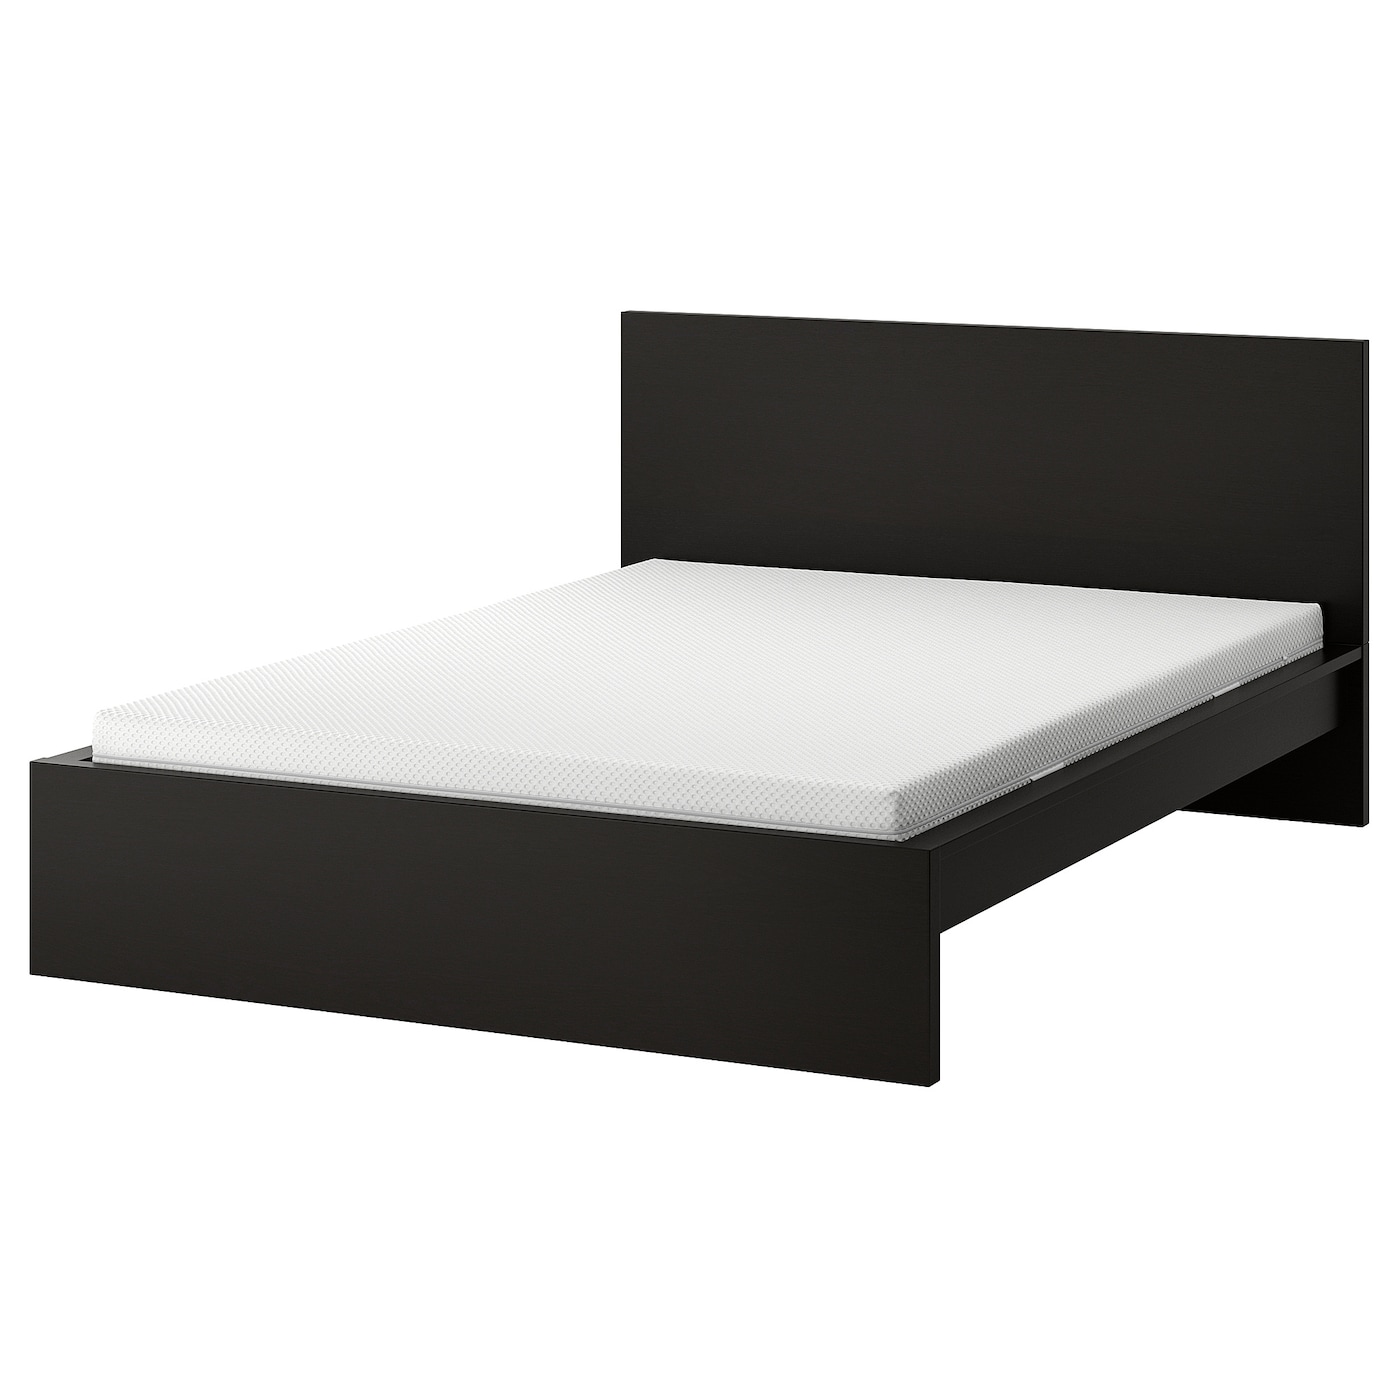 Кровать - IKEA MALM, 200х160 см, матрас средней жесткости, черный, МАЛЬМ ИКЕА